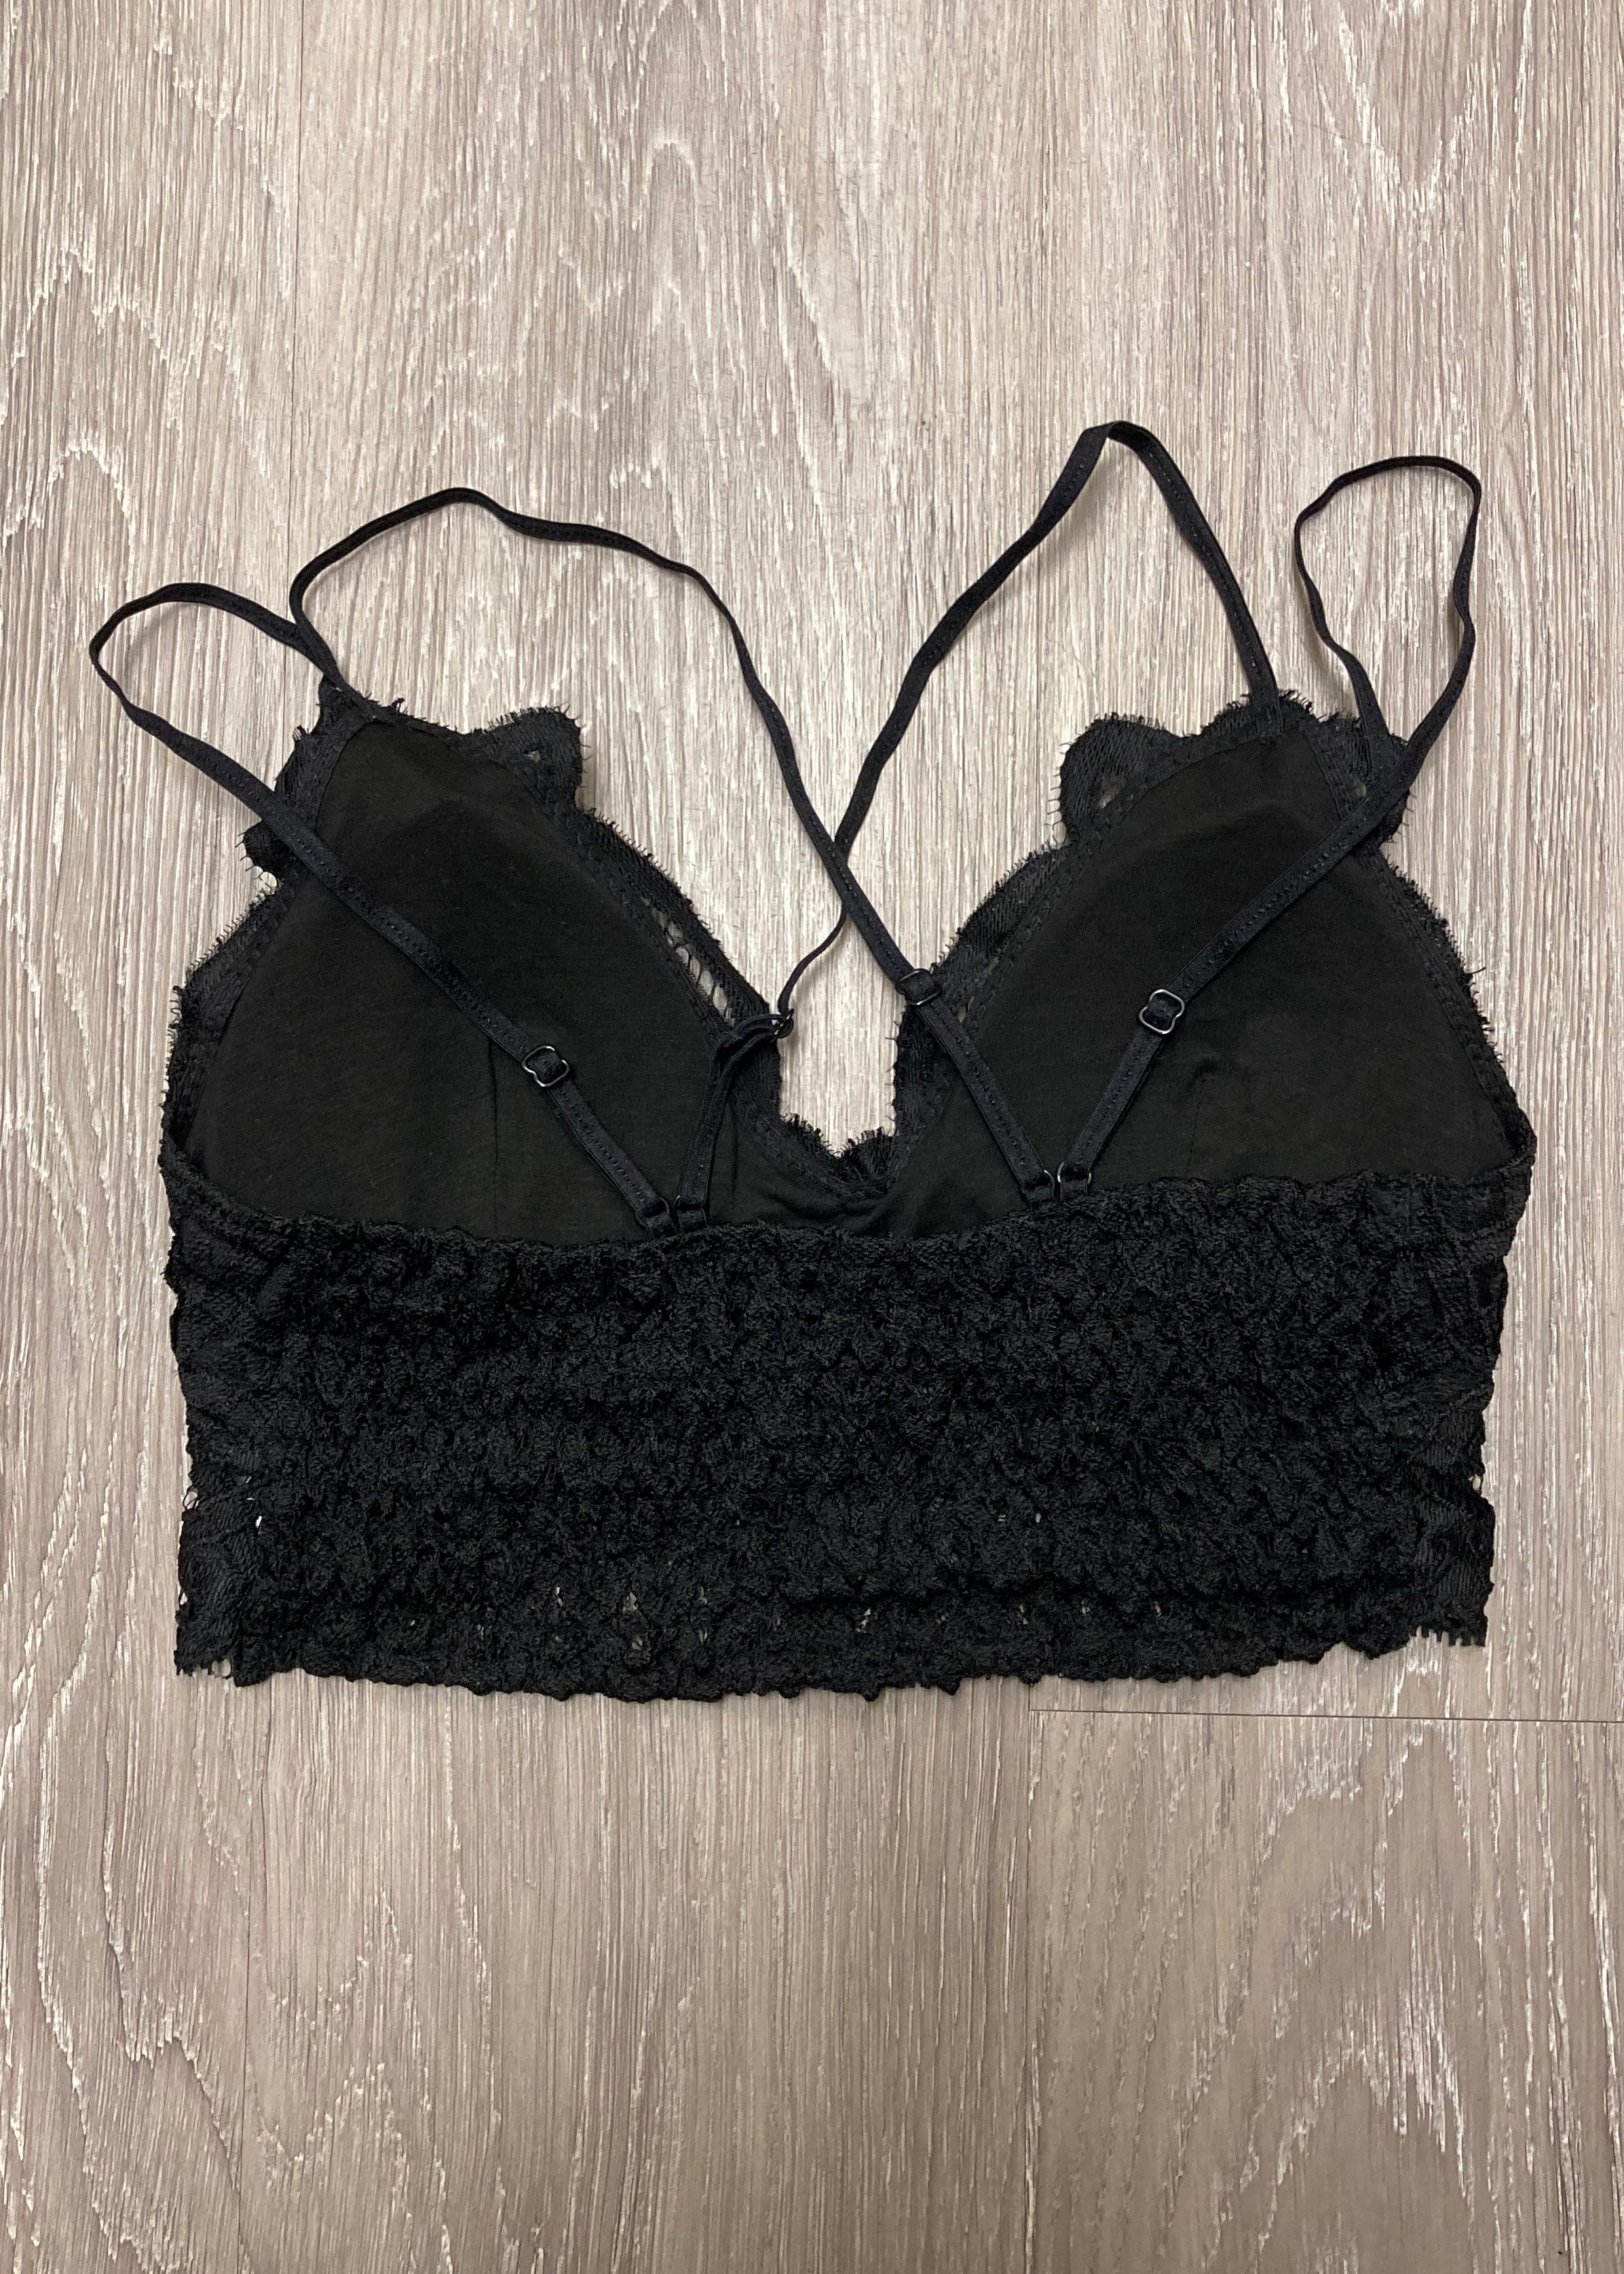 Signature Accessory Black Crochet Bralette-Shop-Womens-Boutique-Clothing